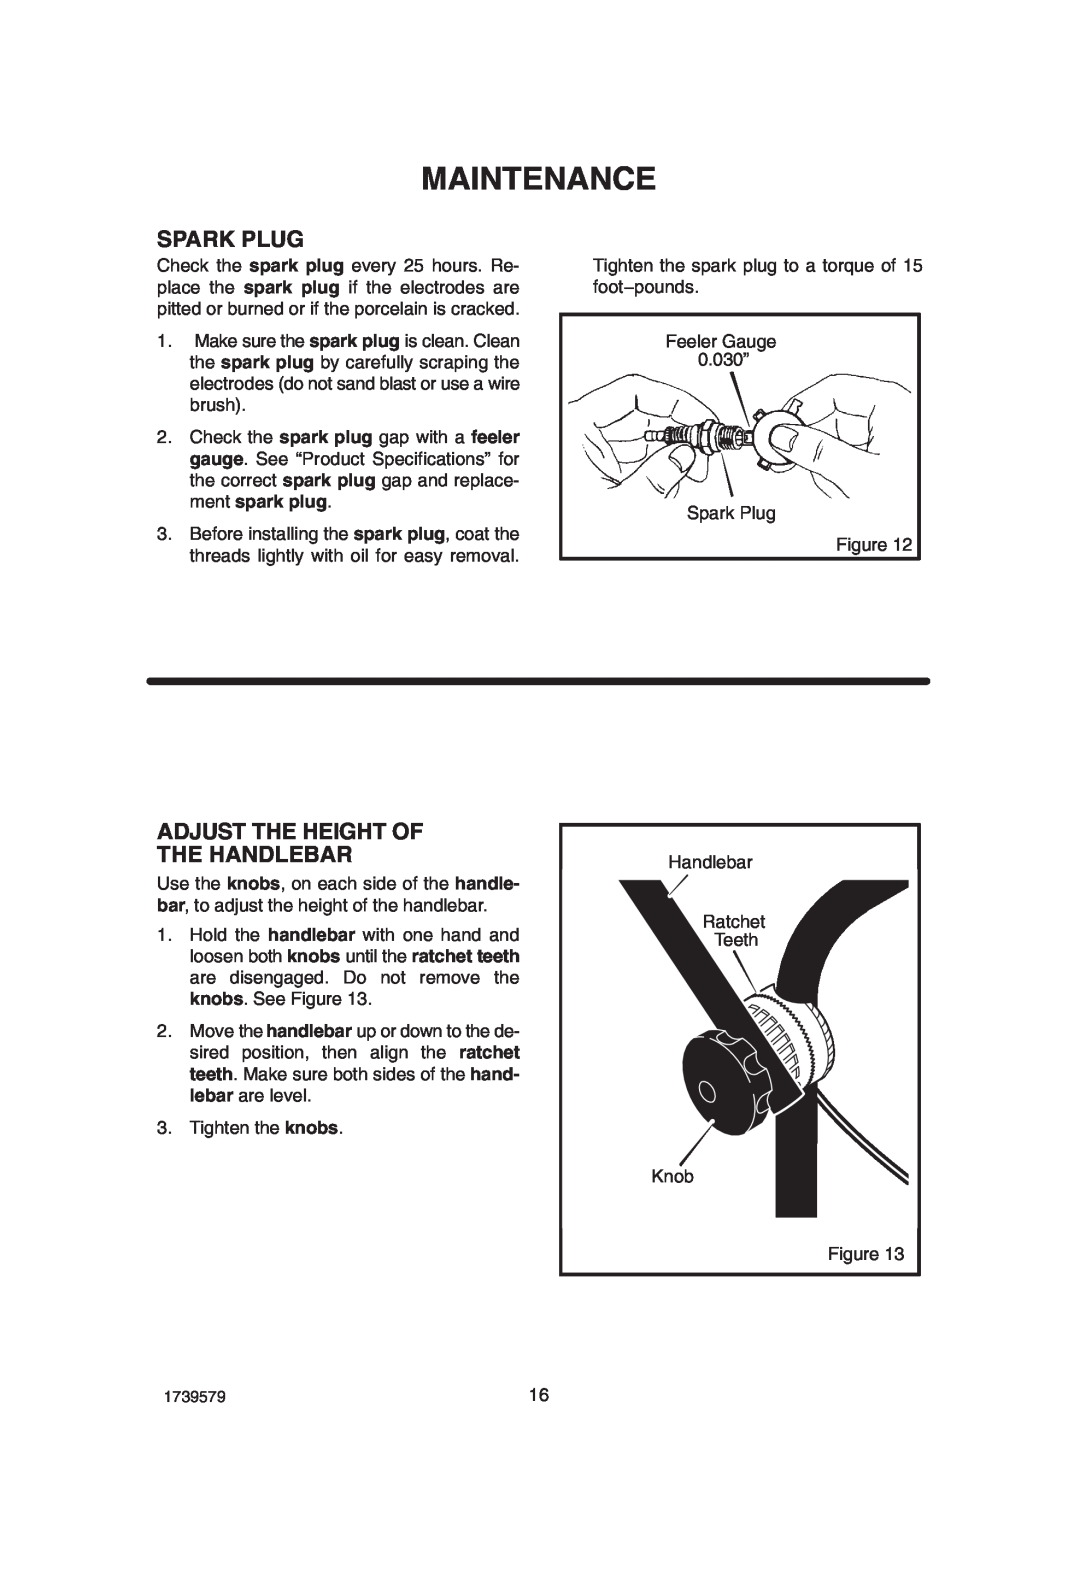 Hayter Mowers 407F manual Spark Plug, Adjust The Height Of The Handlebar, Maintenance 